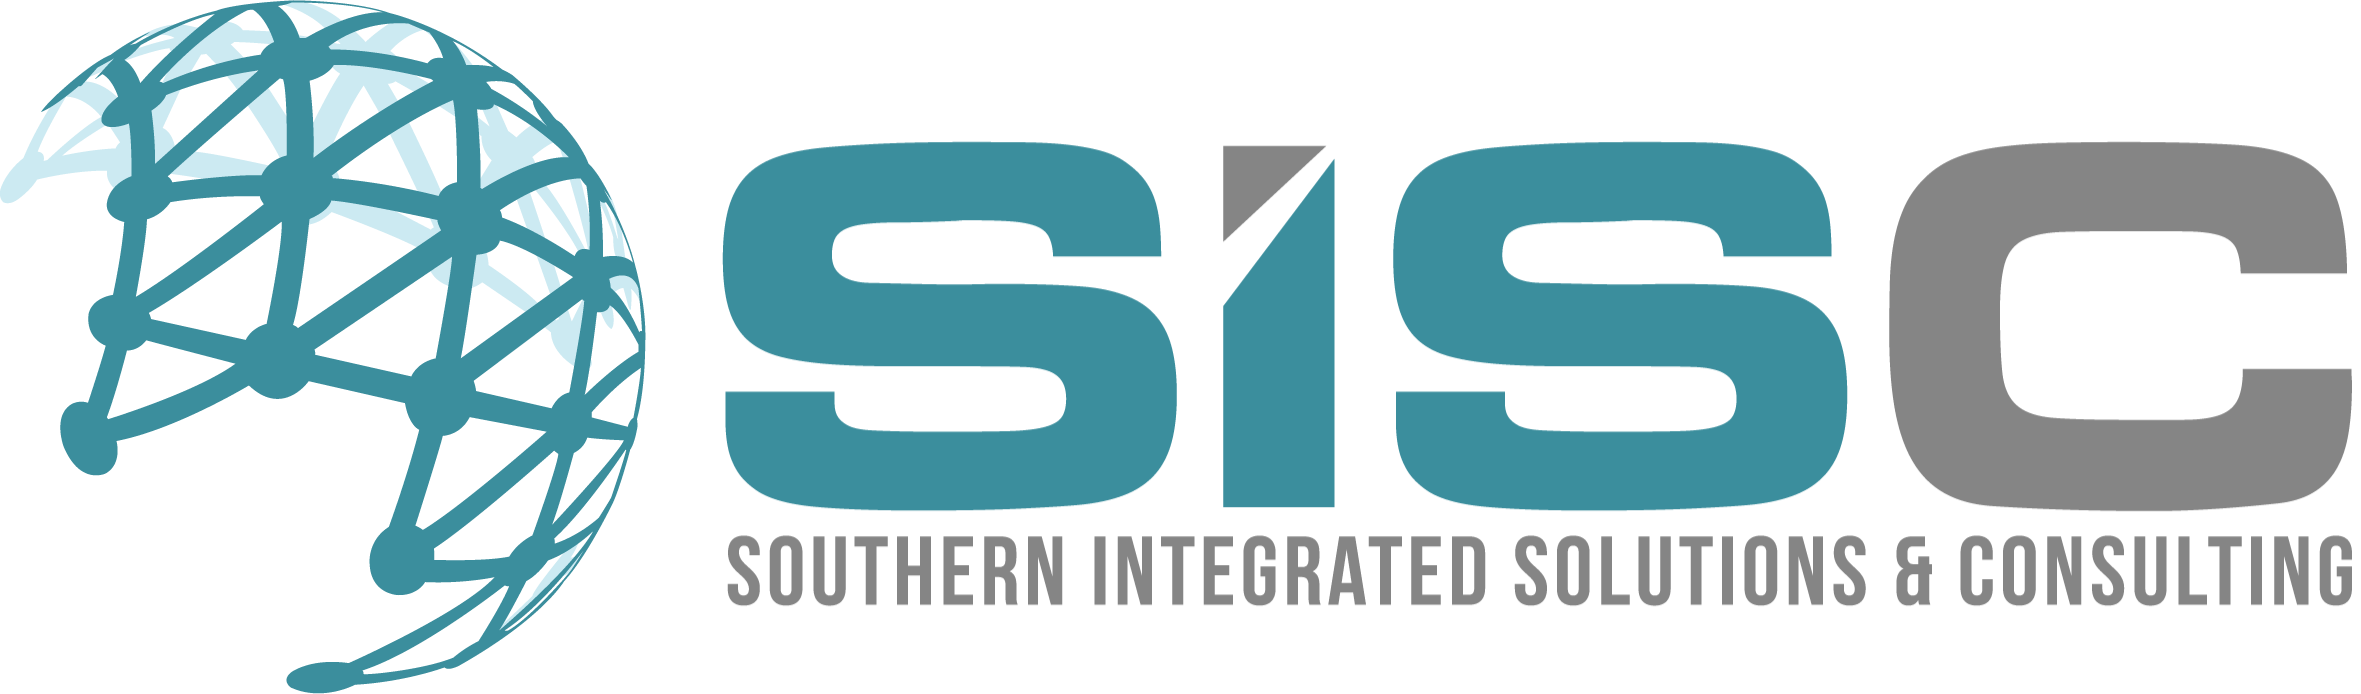 SISC-logo